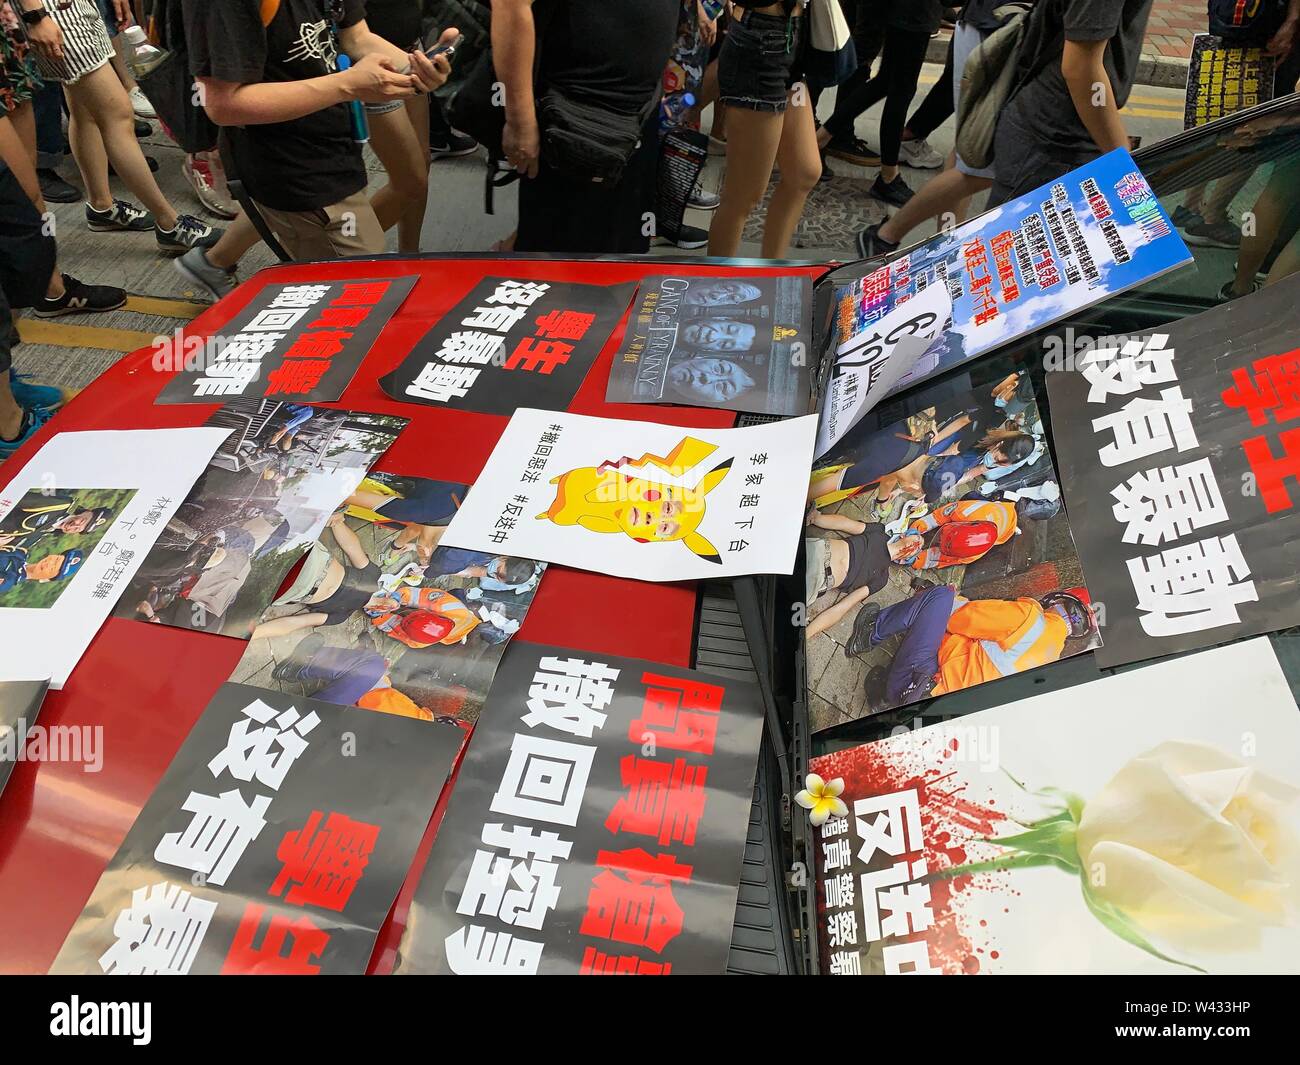 Hong Kong - Giugno 16 2019: 2 milioni di manifestanti spiccano per opporsi a un controverso disegno di legge in materia di estradizione che possono includere la Cina. Dal 9 giugno la gente di Hong Kong di mantenere per protesta contro la legge in materia di estradizione. Foto Stock